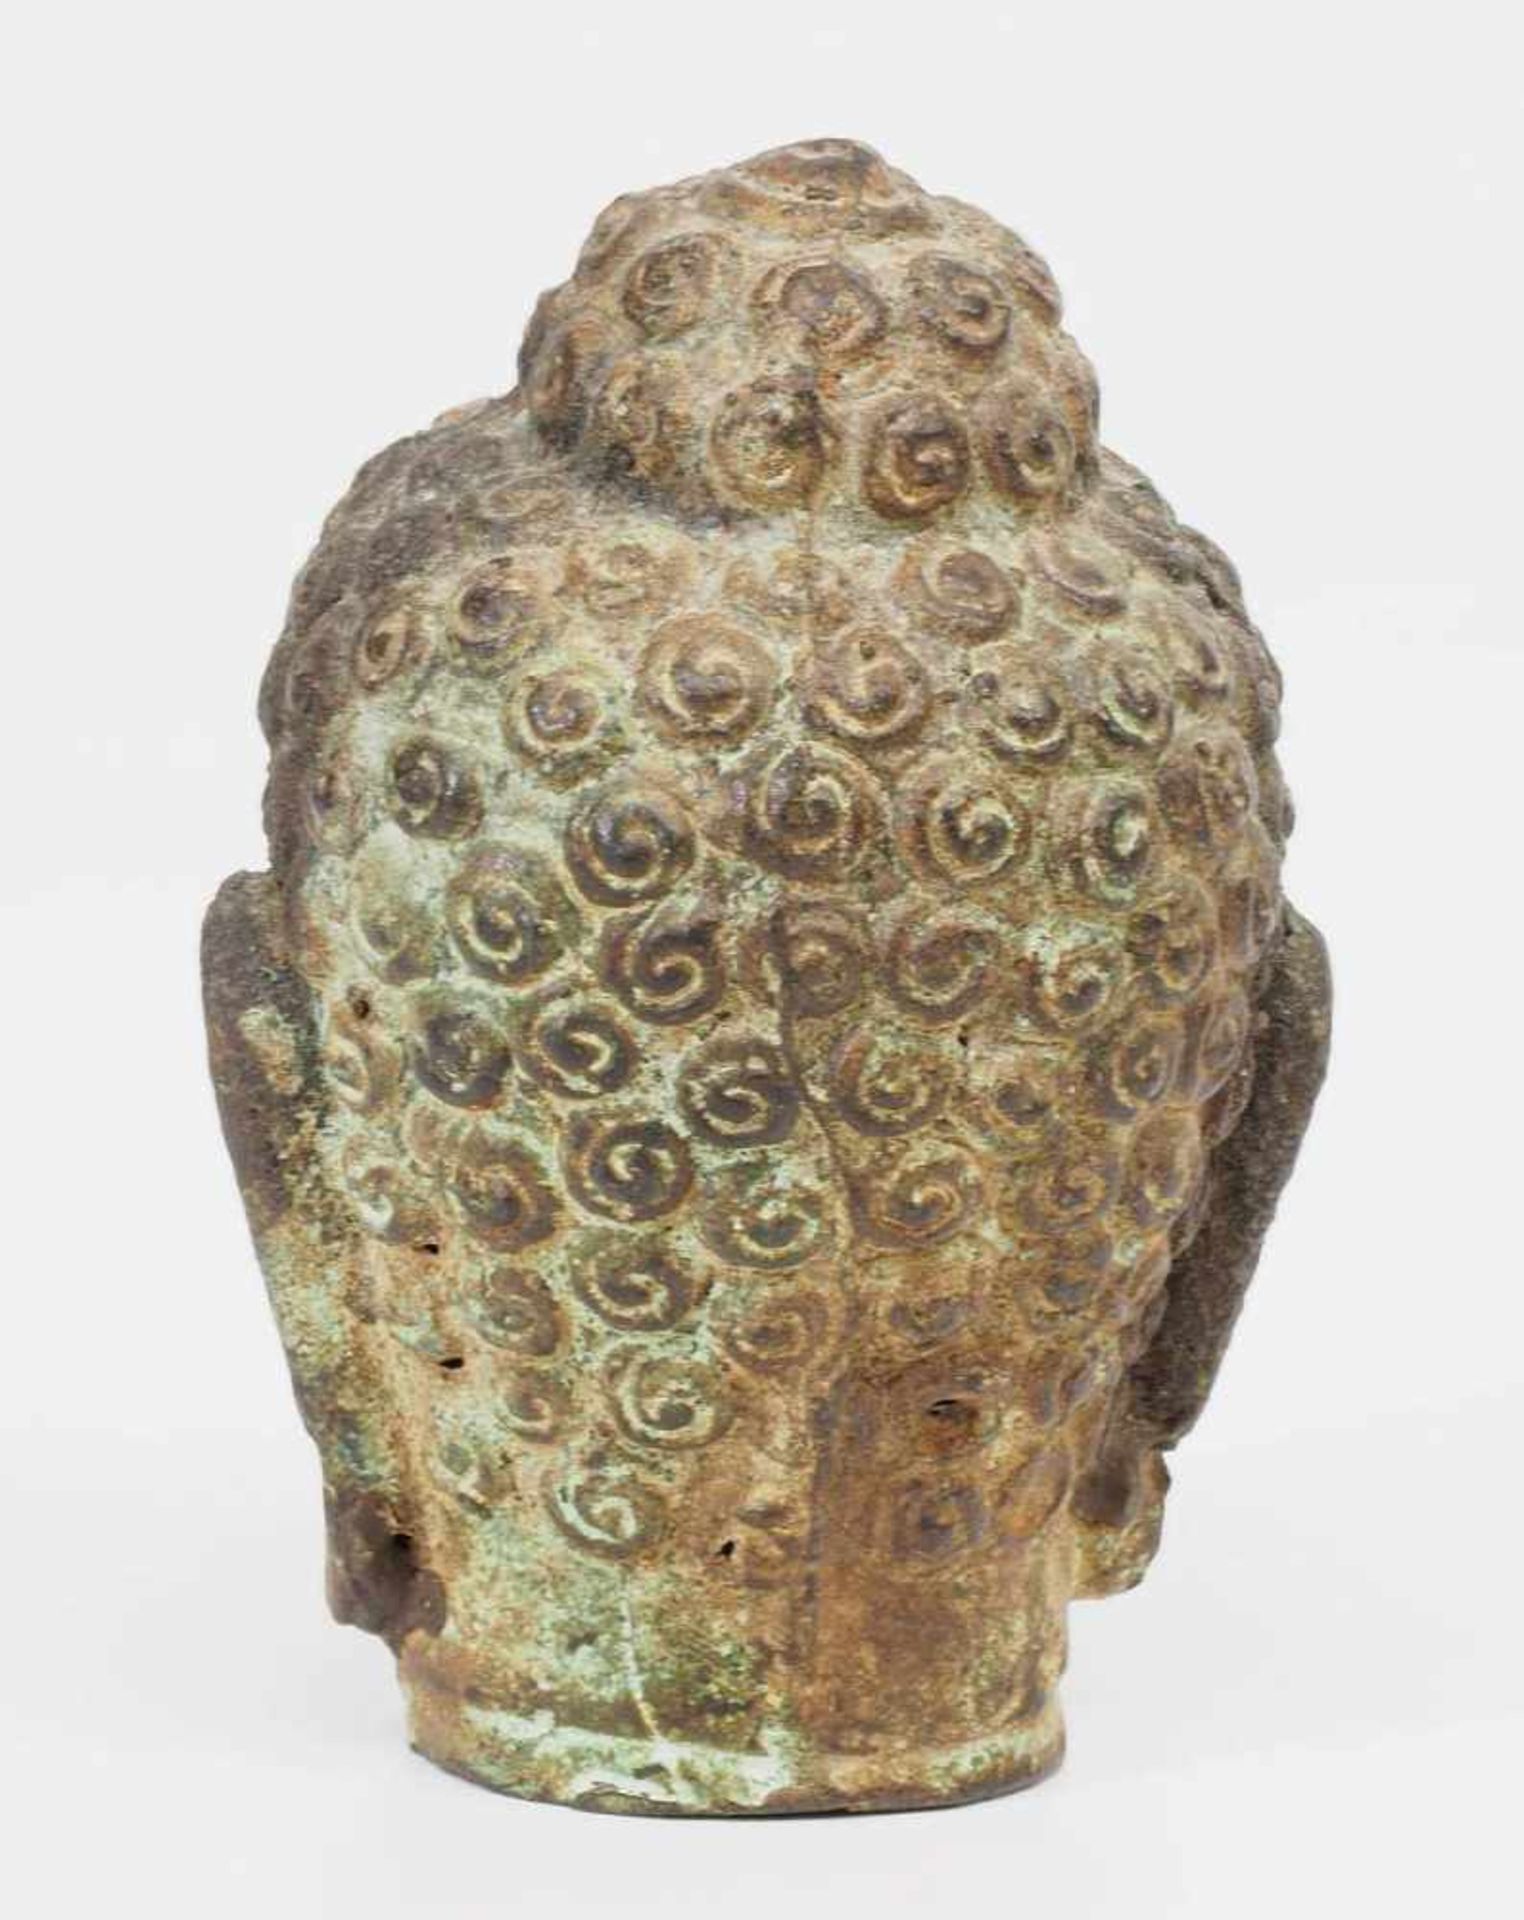 Kleiner Buddha-Kopf. Asien.Kleiner Buddha-Kopf. Asien. Bronze mit Alterspatina, leicht grünlich. - Image 4 of 6